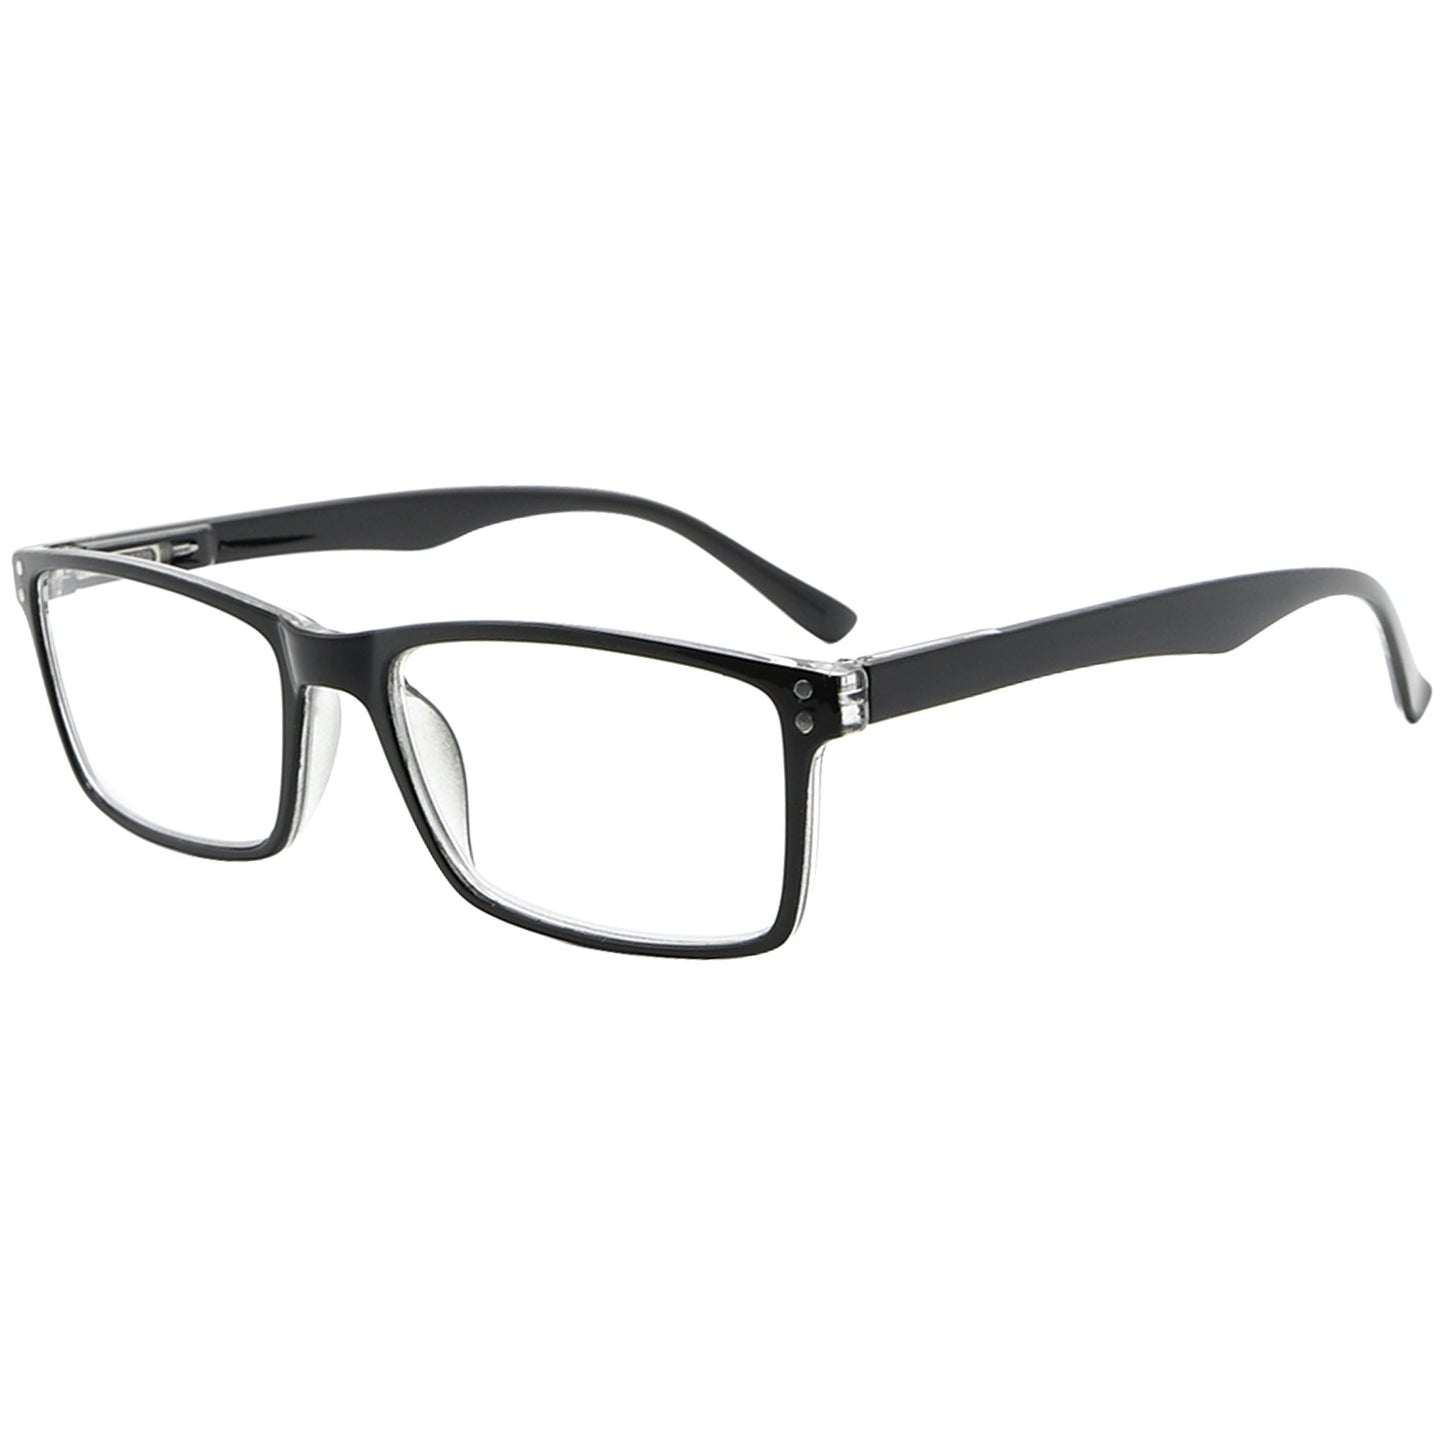 Elegant Reading Glasses Black R802